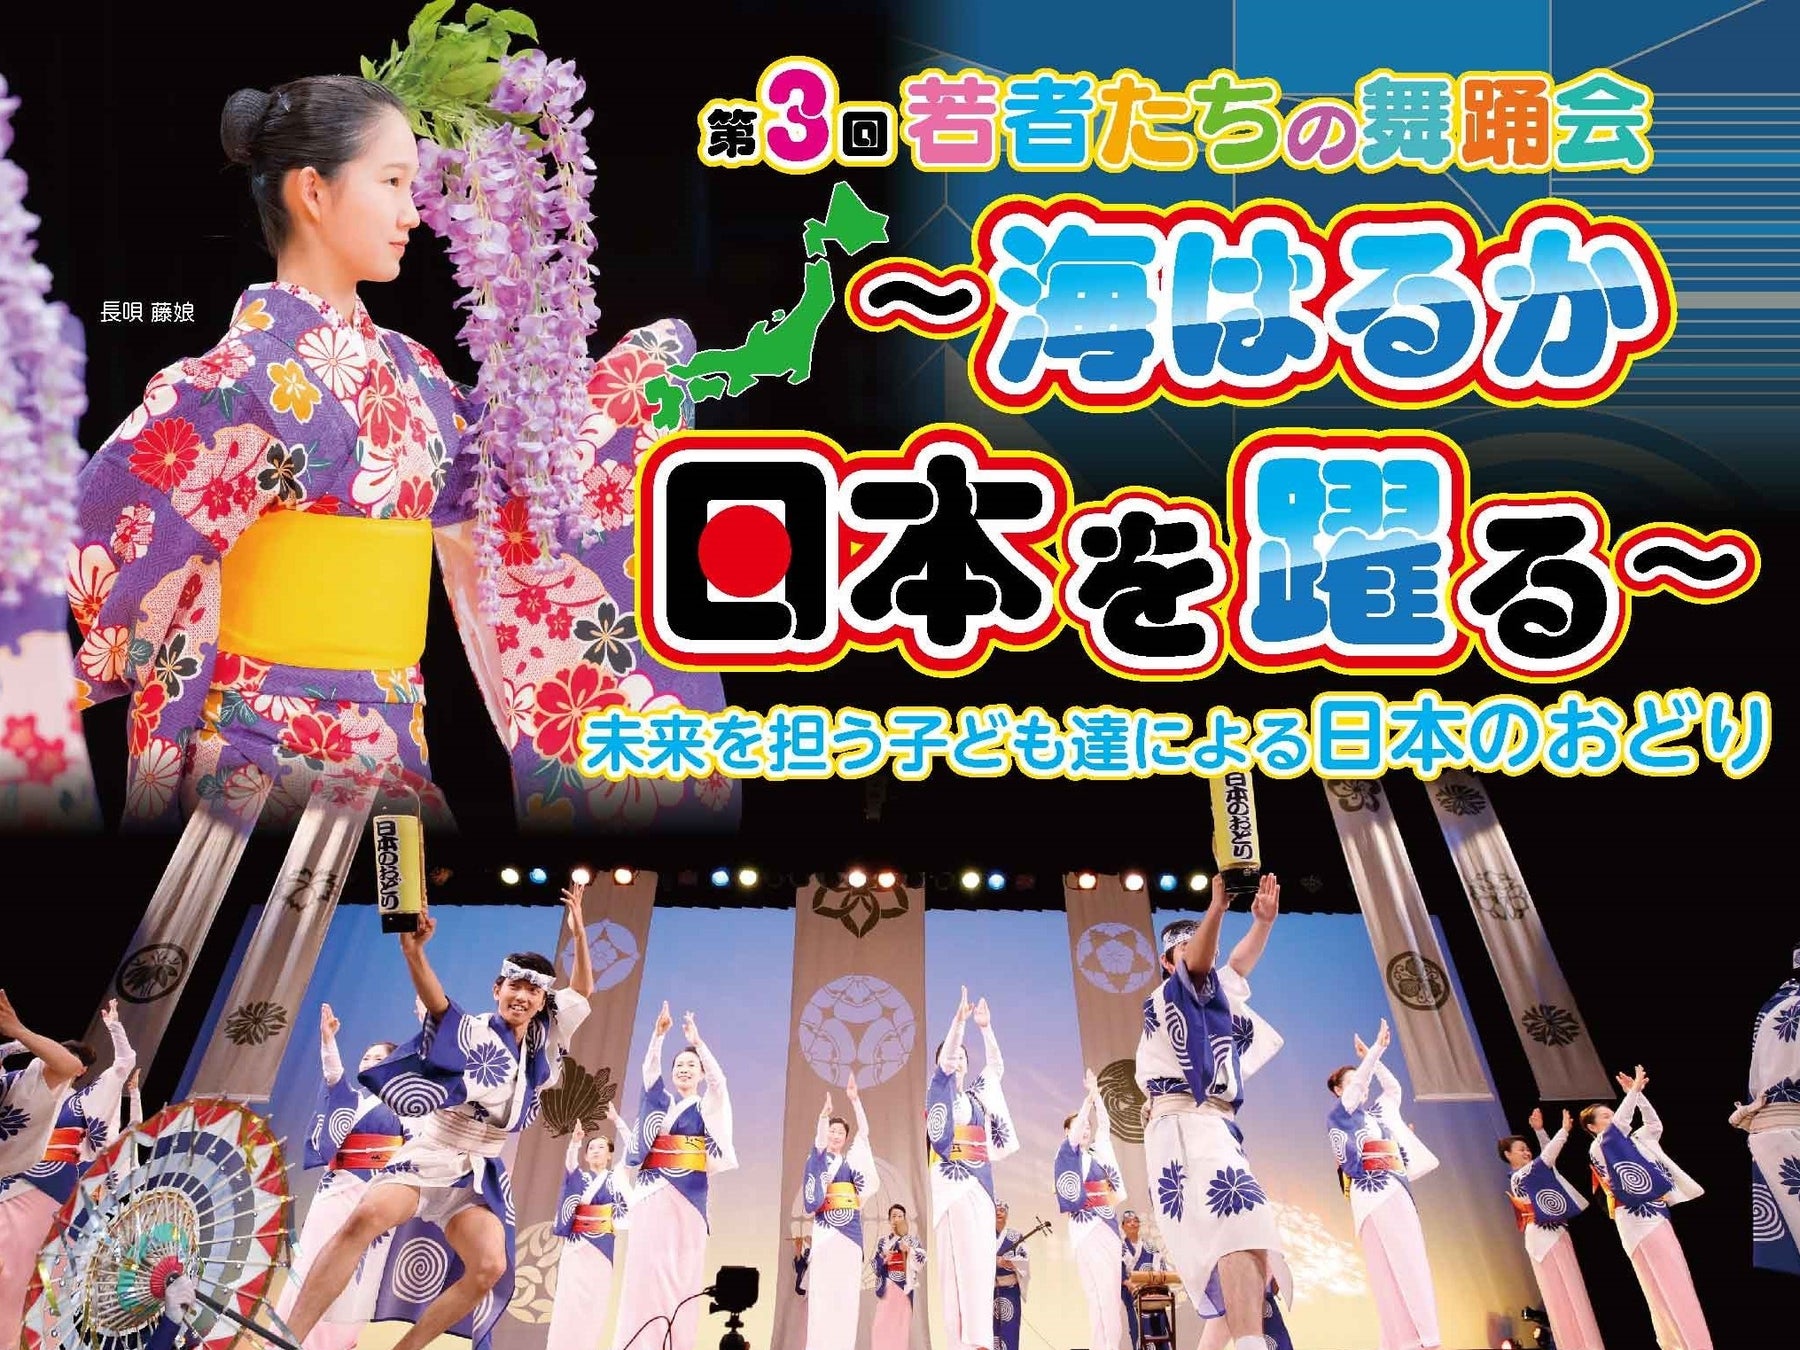 こどもの日に浅草公会堂にて「第3回若者たちの舞踊会 ~海はるか 日本を躍る~」を開催します。